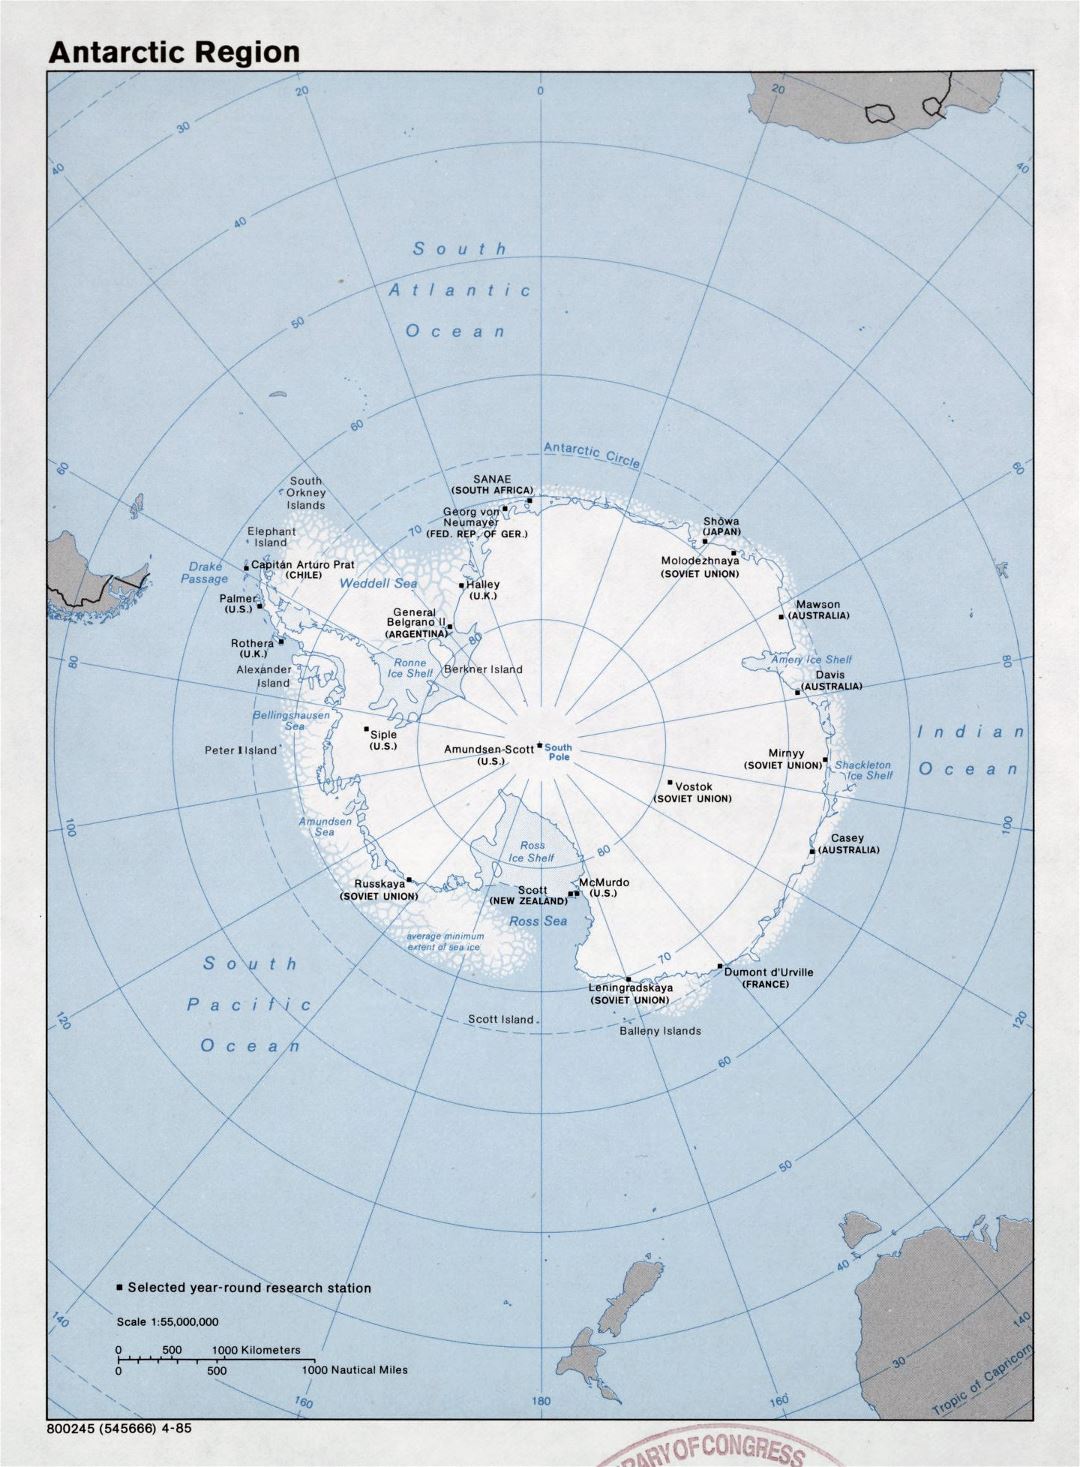 Gran mapa detallado de la Región Antártica - 1985